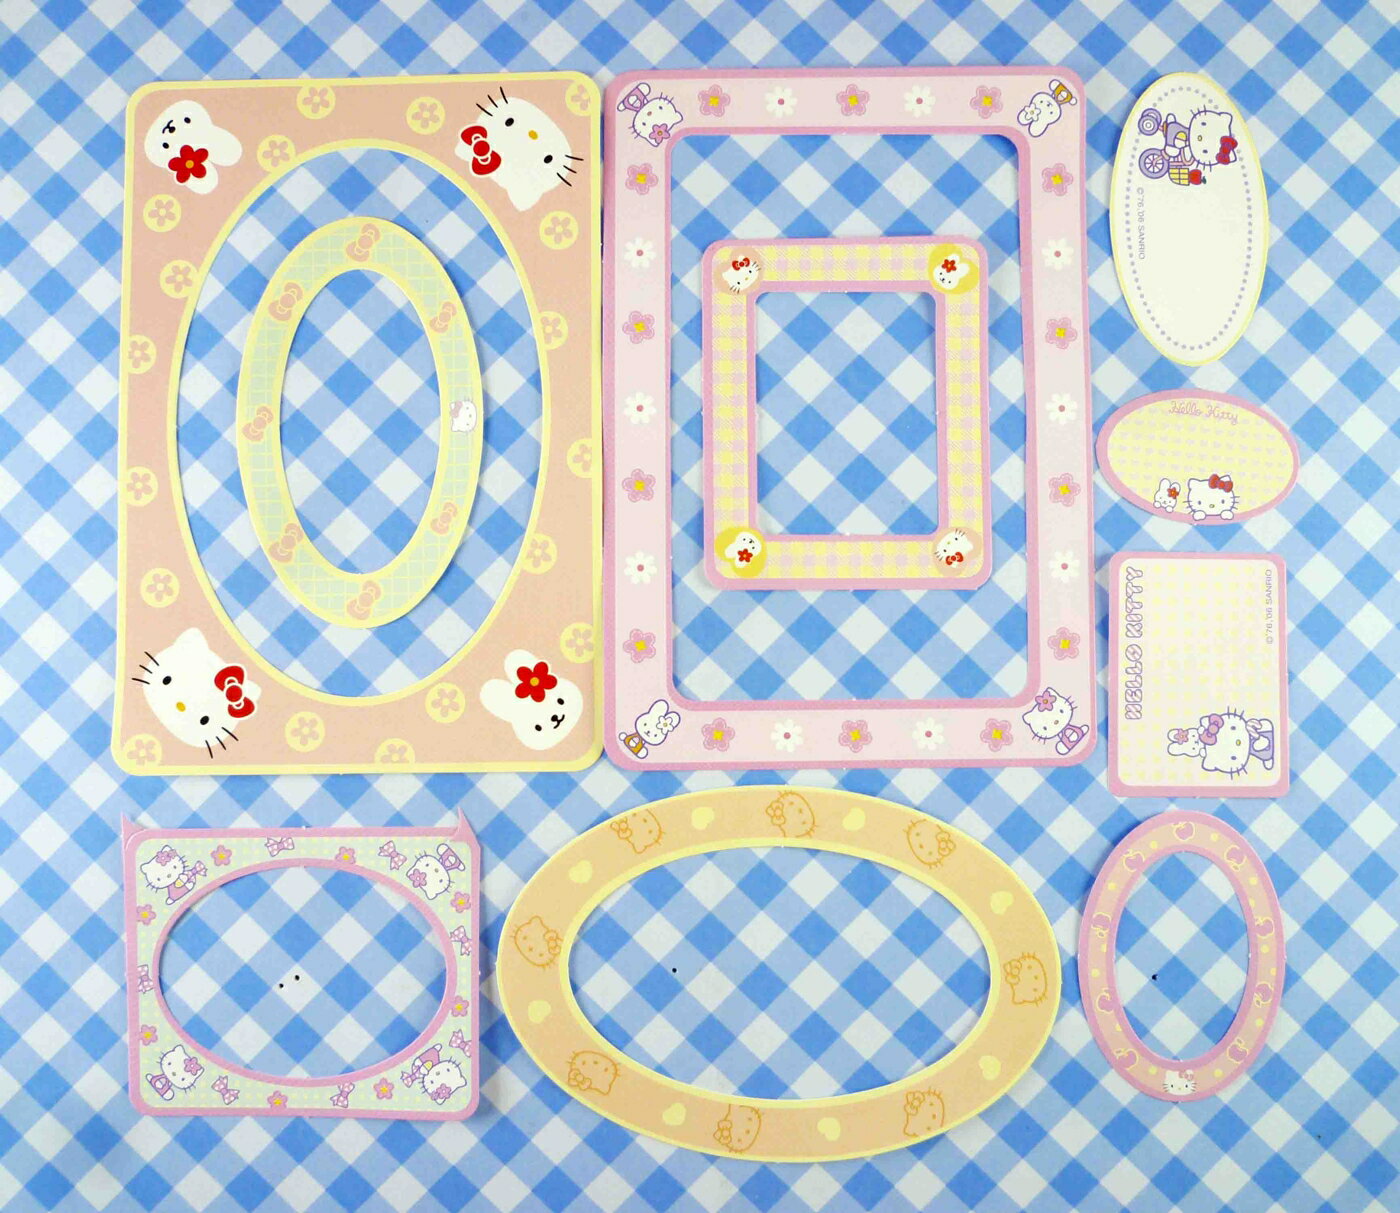 【震撼精品百貨】Hello Kitty 凱蒂貓 KITTY貼紙-相框 震撼日式精品百貨